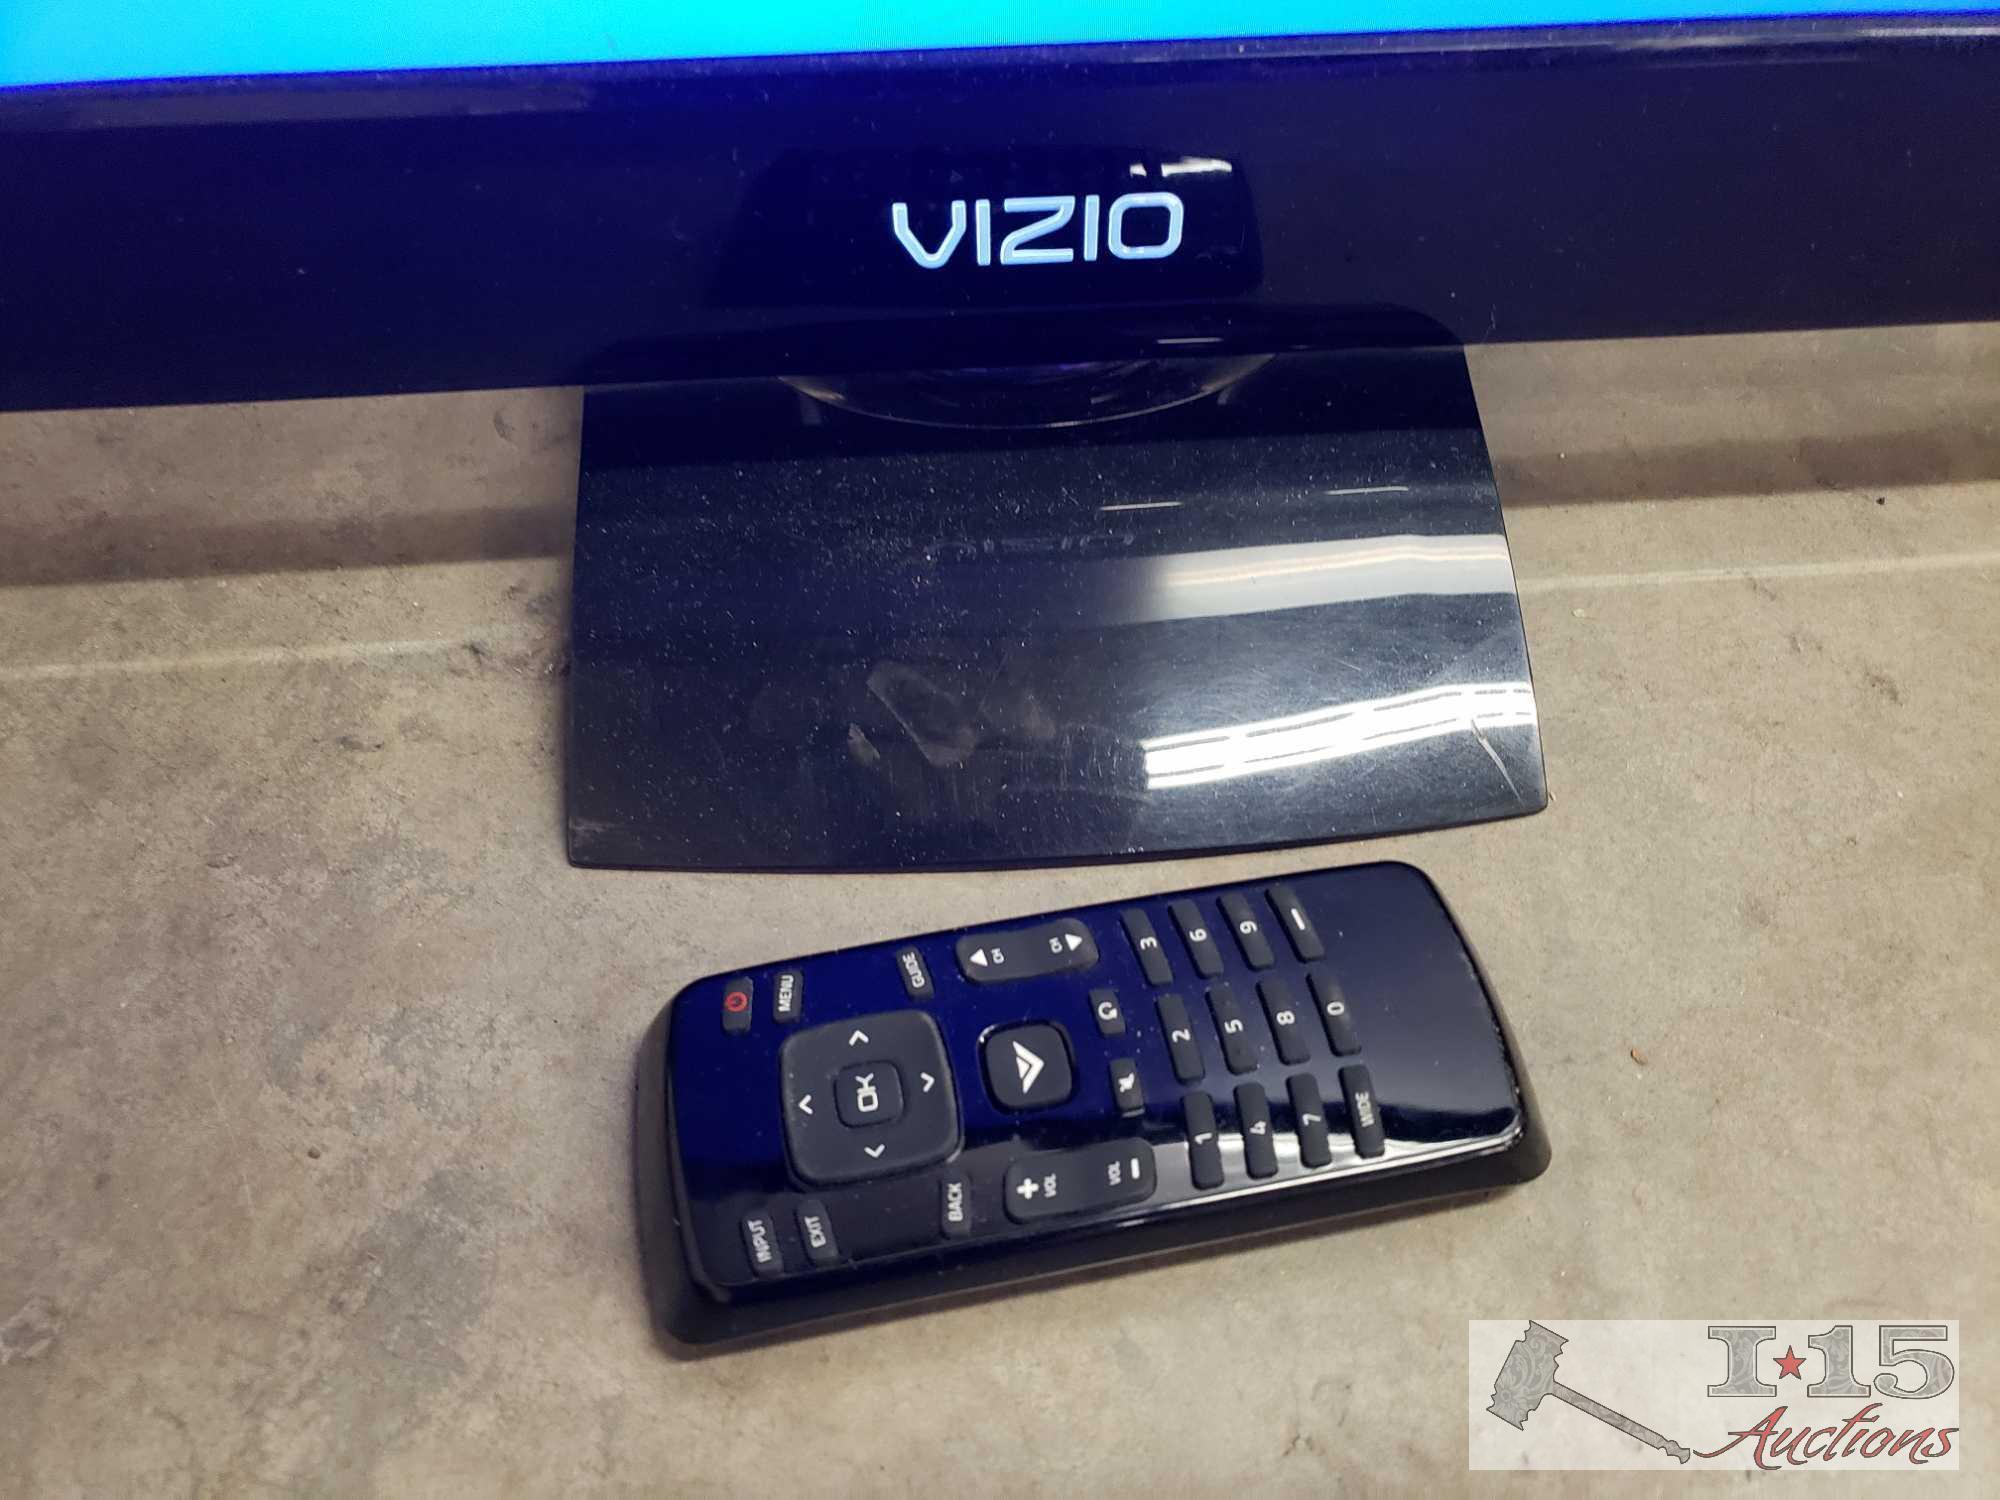 26" Vizio TV with Remote